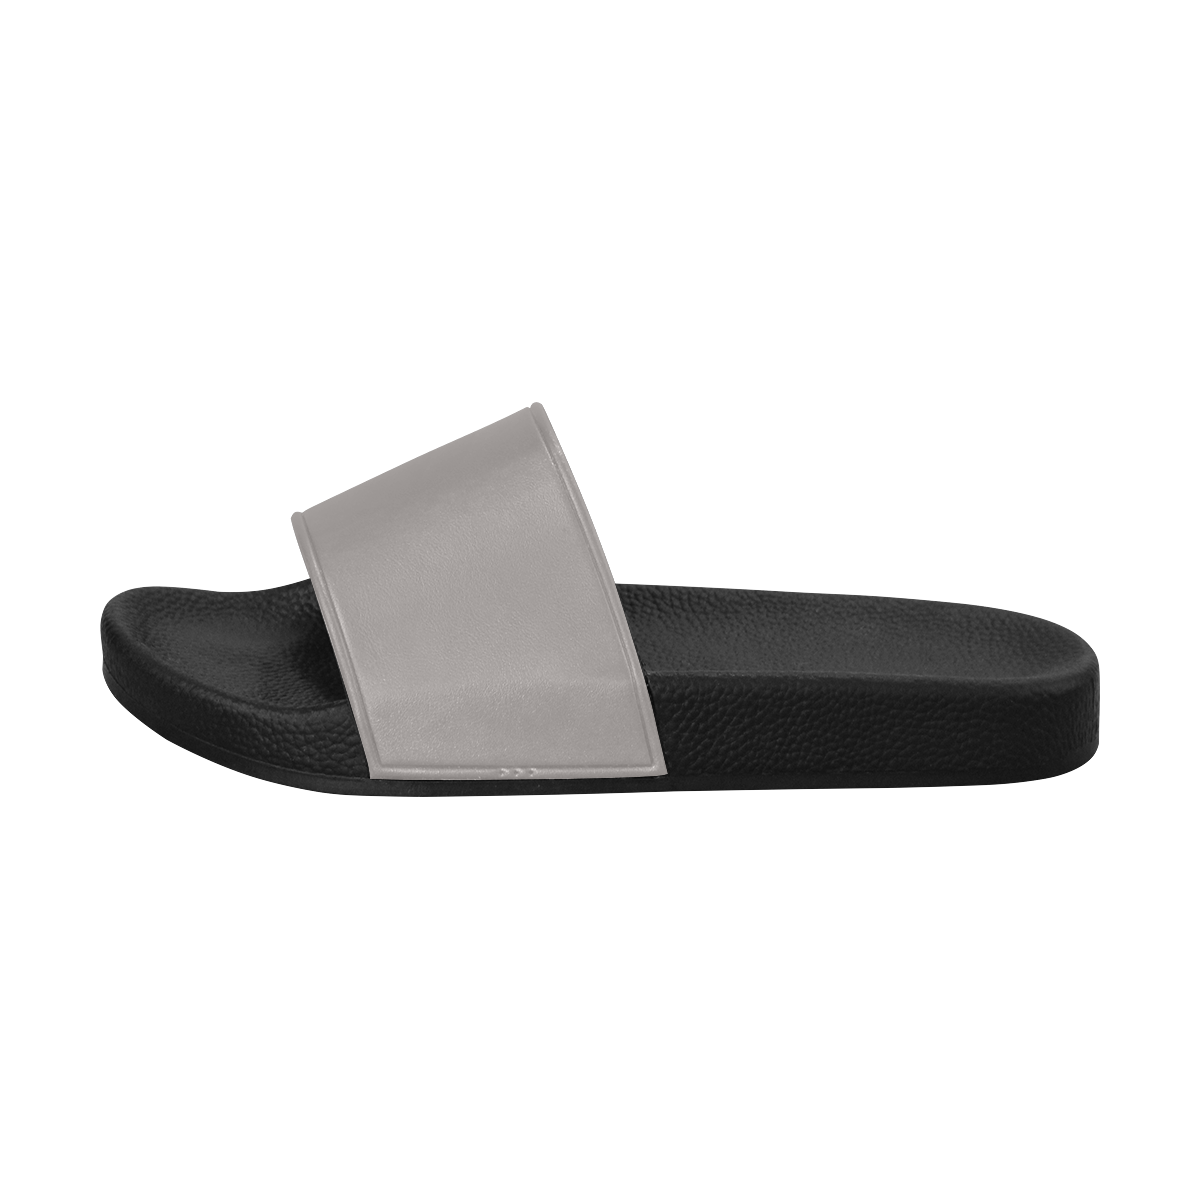 Ash Women's Slide Sandals (Model 057)